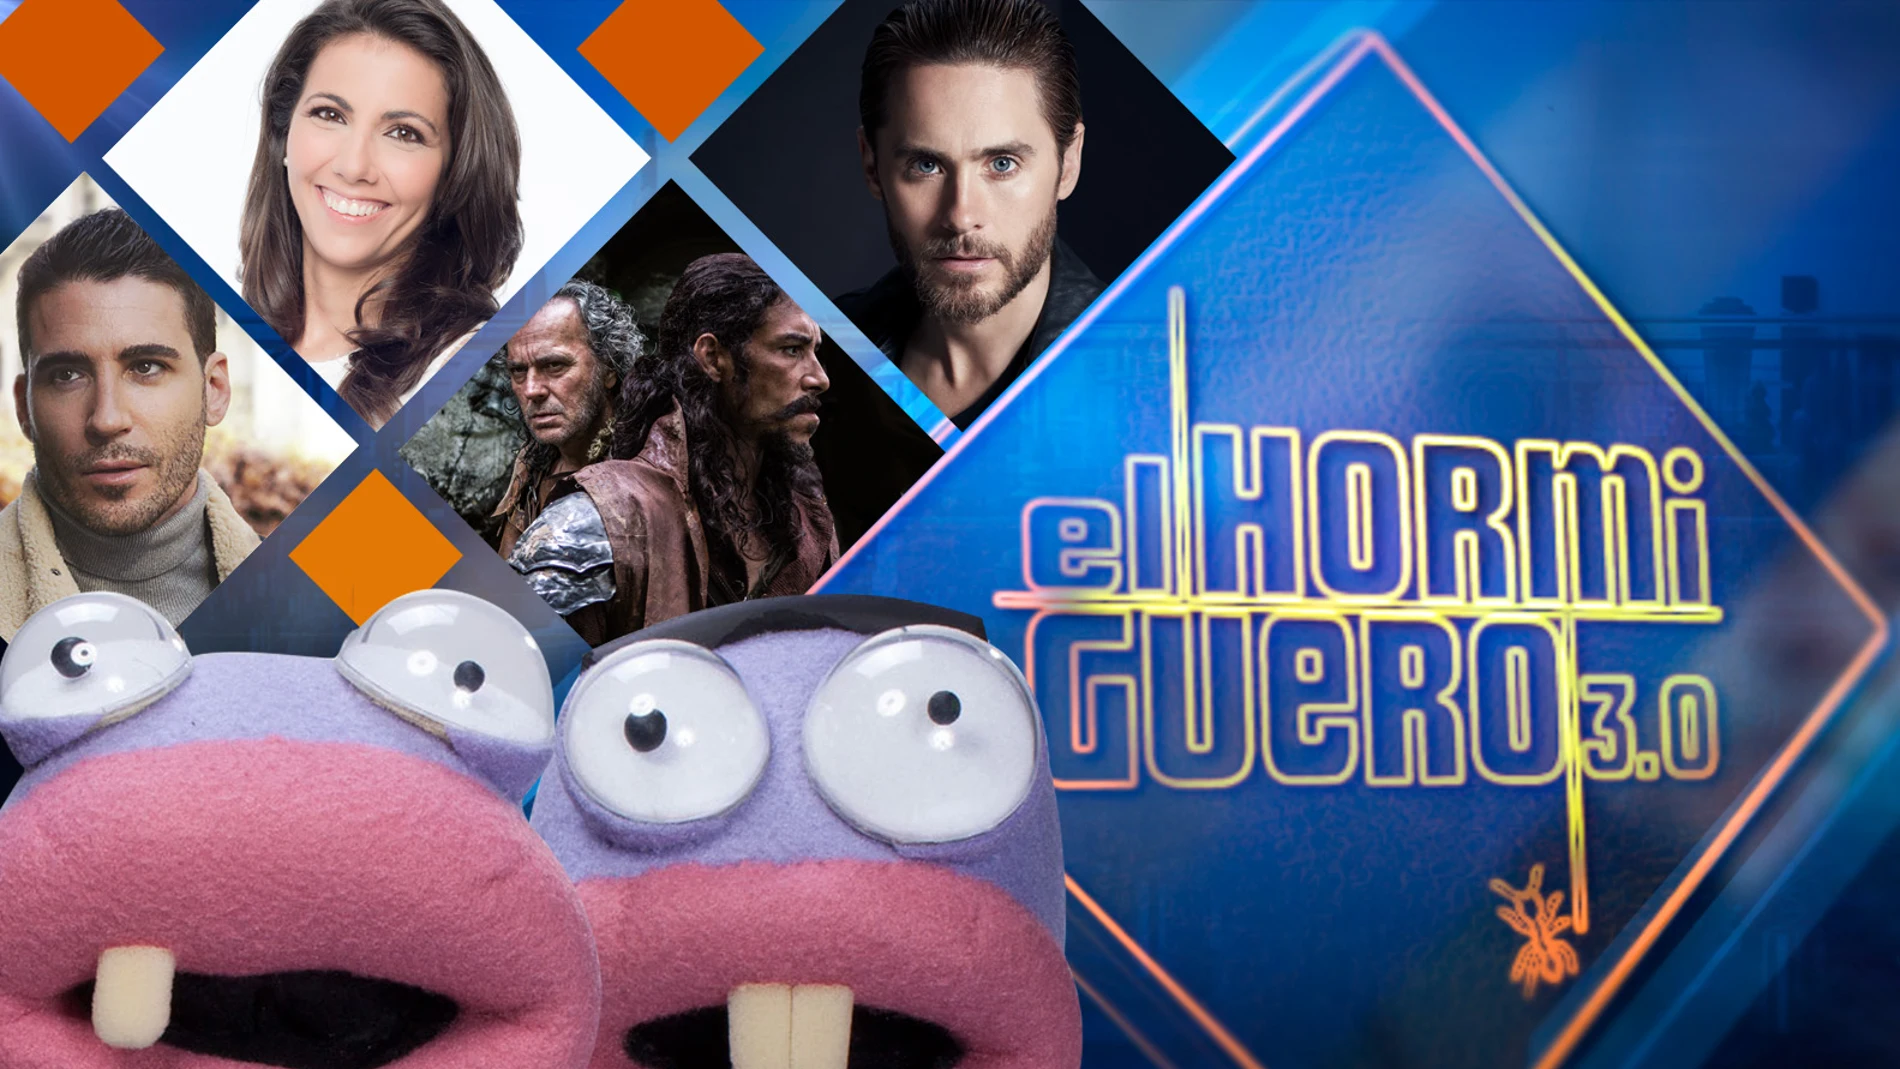 Miguel Ángel Silvestre, Ana Pastor, José Coronado y Óscar Jaenada, y Jared Leto se divertirán la próxima semana en 'El Hormiguero 3.0'